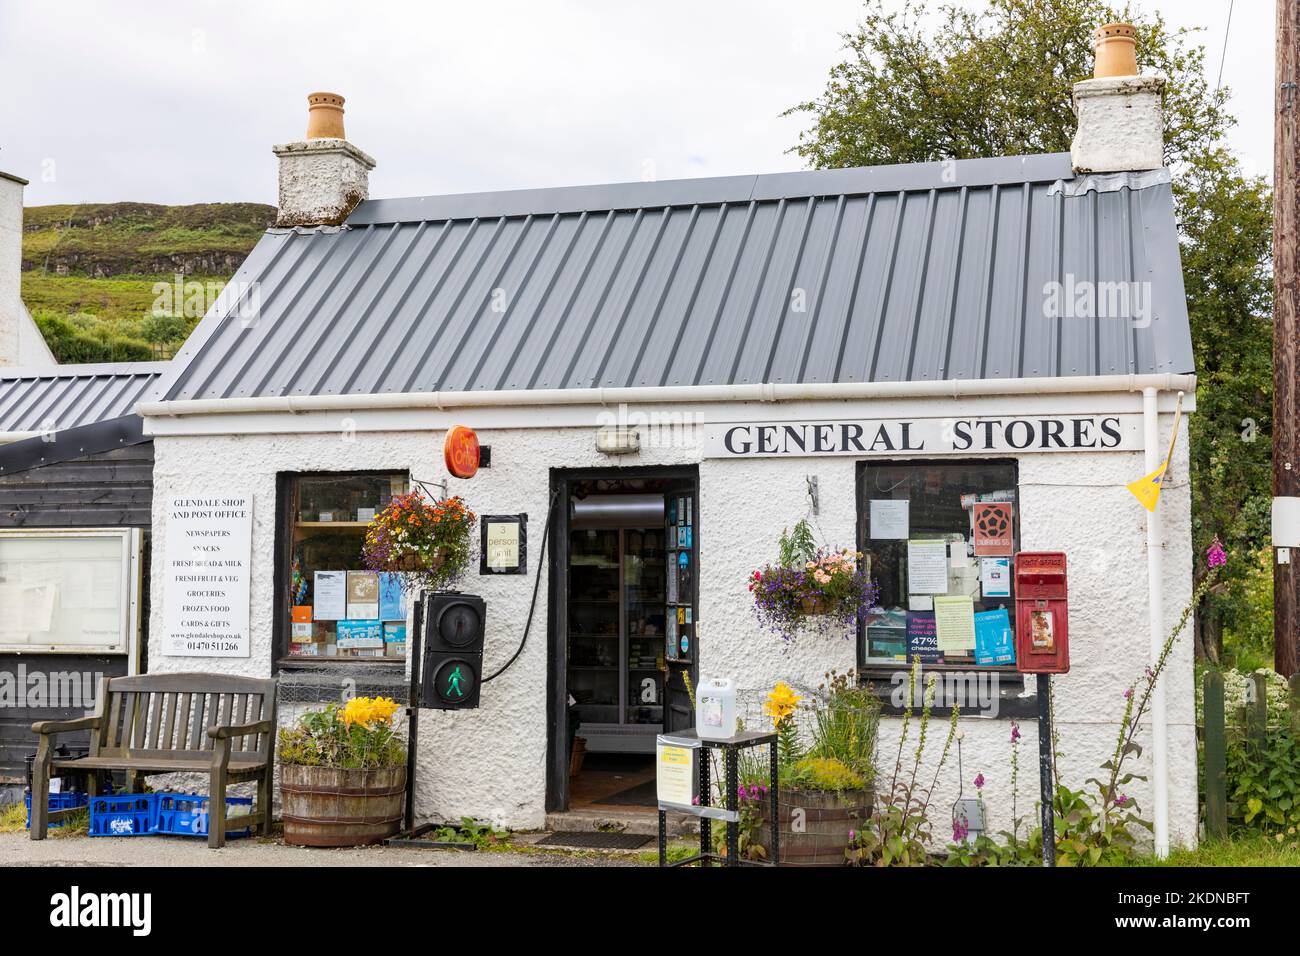 Glendale bureau de poste et magasin général dans cette propriété communautaire sur l'île de Skye, Écosse, Royaume-Uni, été 2022 Banque D'Images